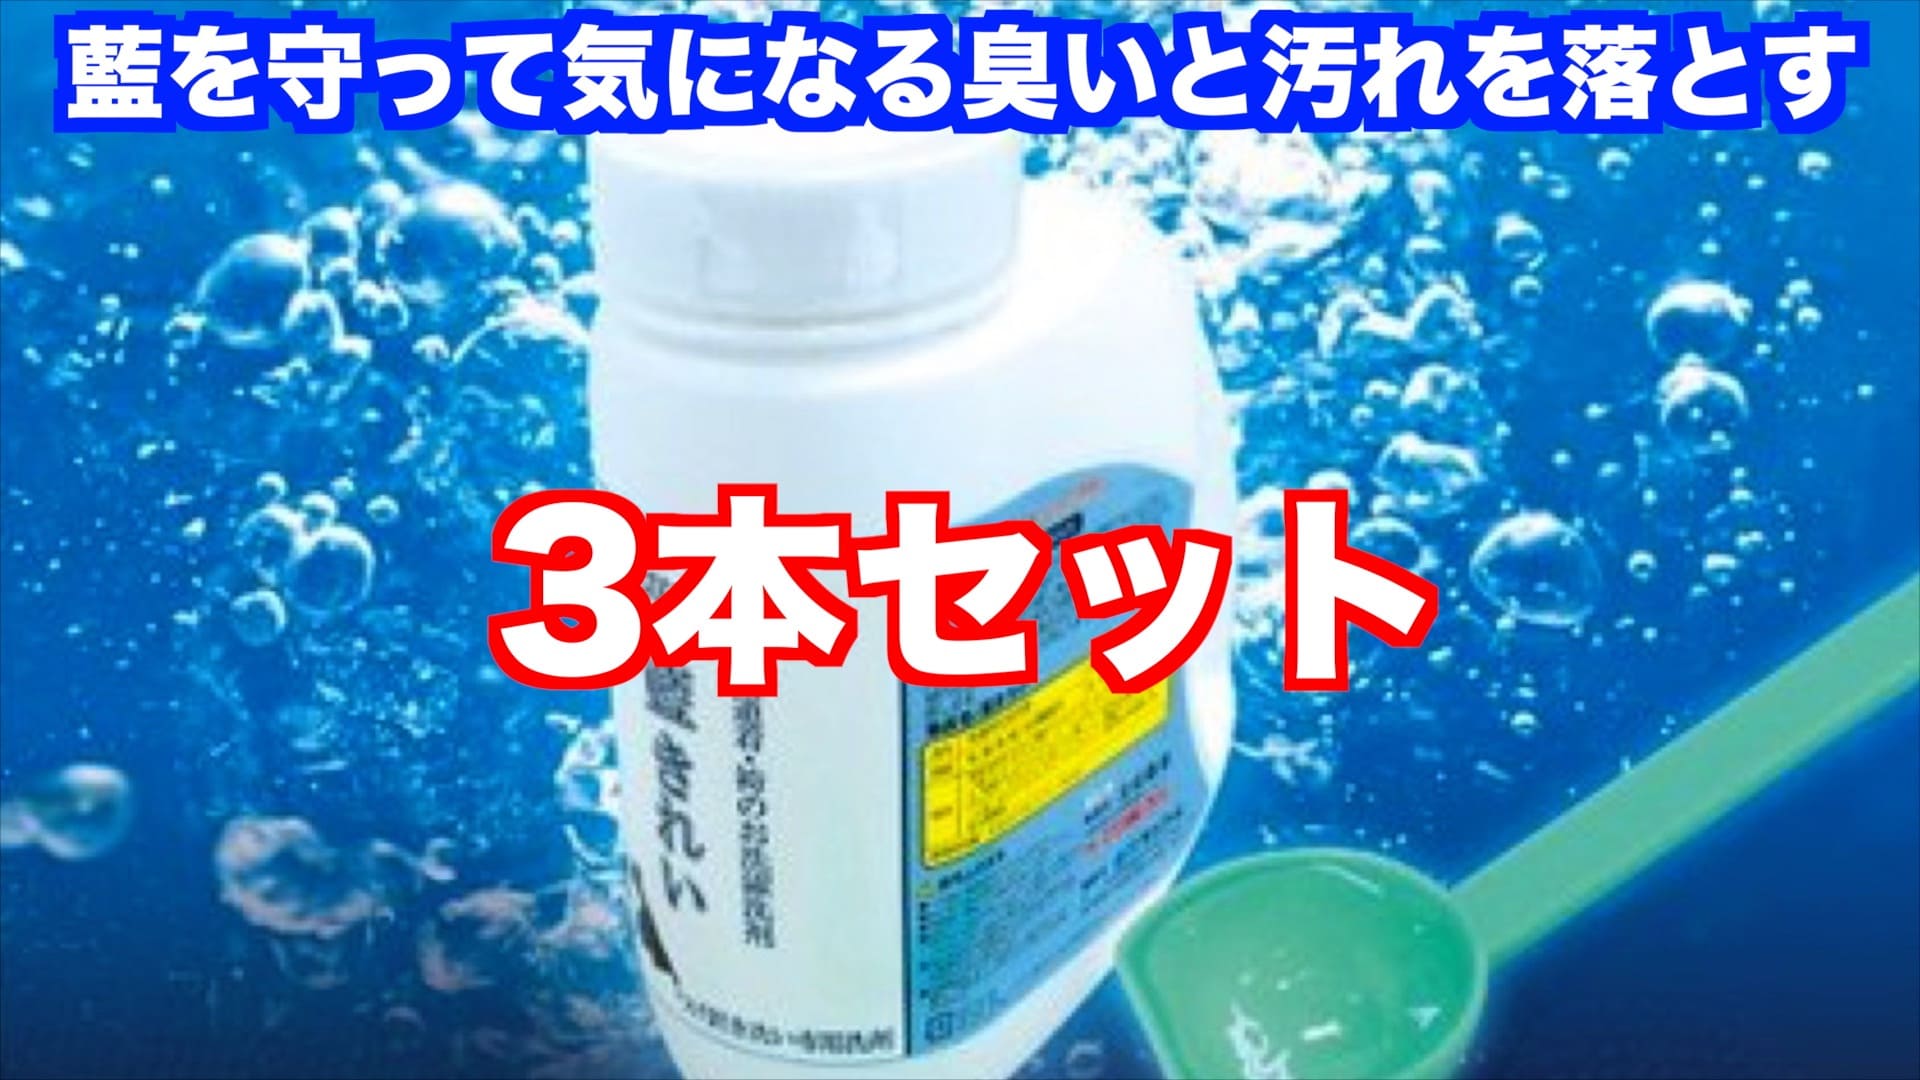 【藍きれい】剣道専用洗剤3本セット